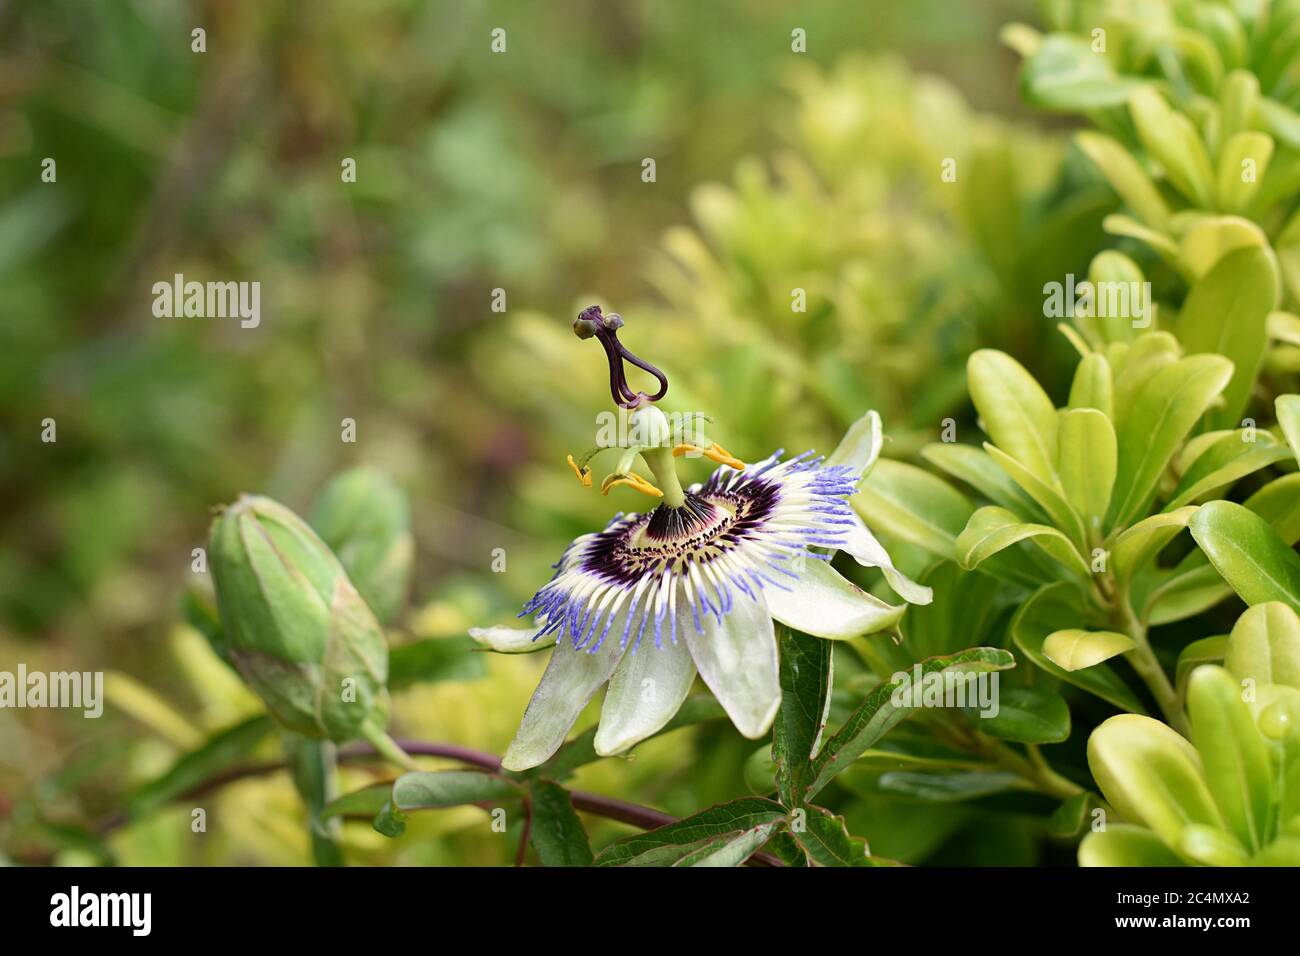 Primo piano di fiori di frutto della passione in giardino estivo / Passiflora fiore bianco e viola con sfondo verde foglie Foto Stock